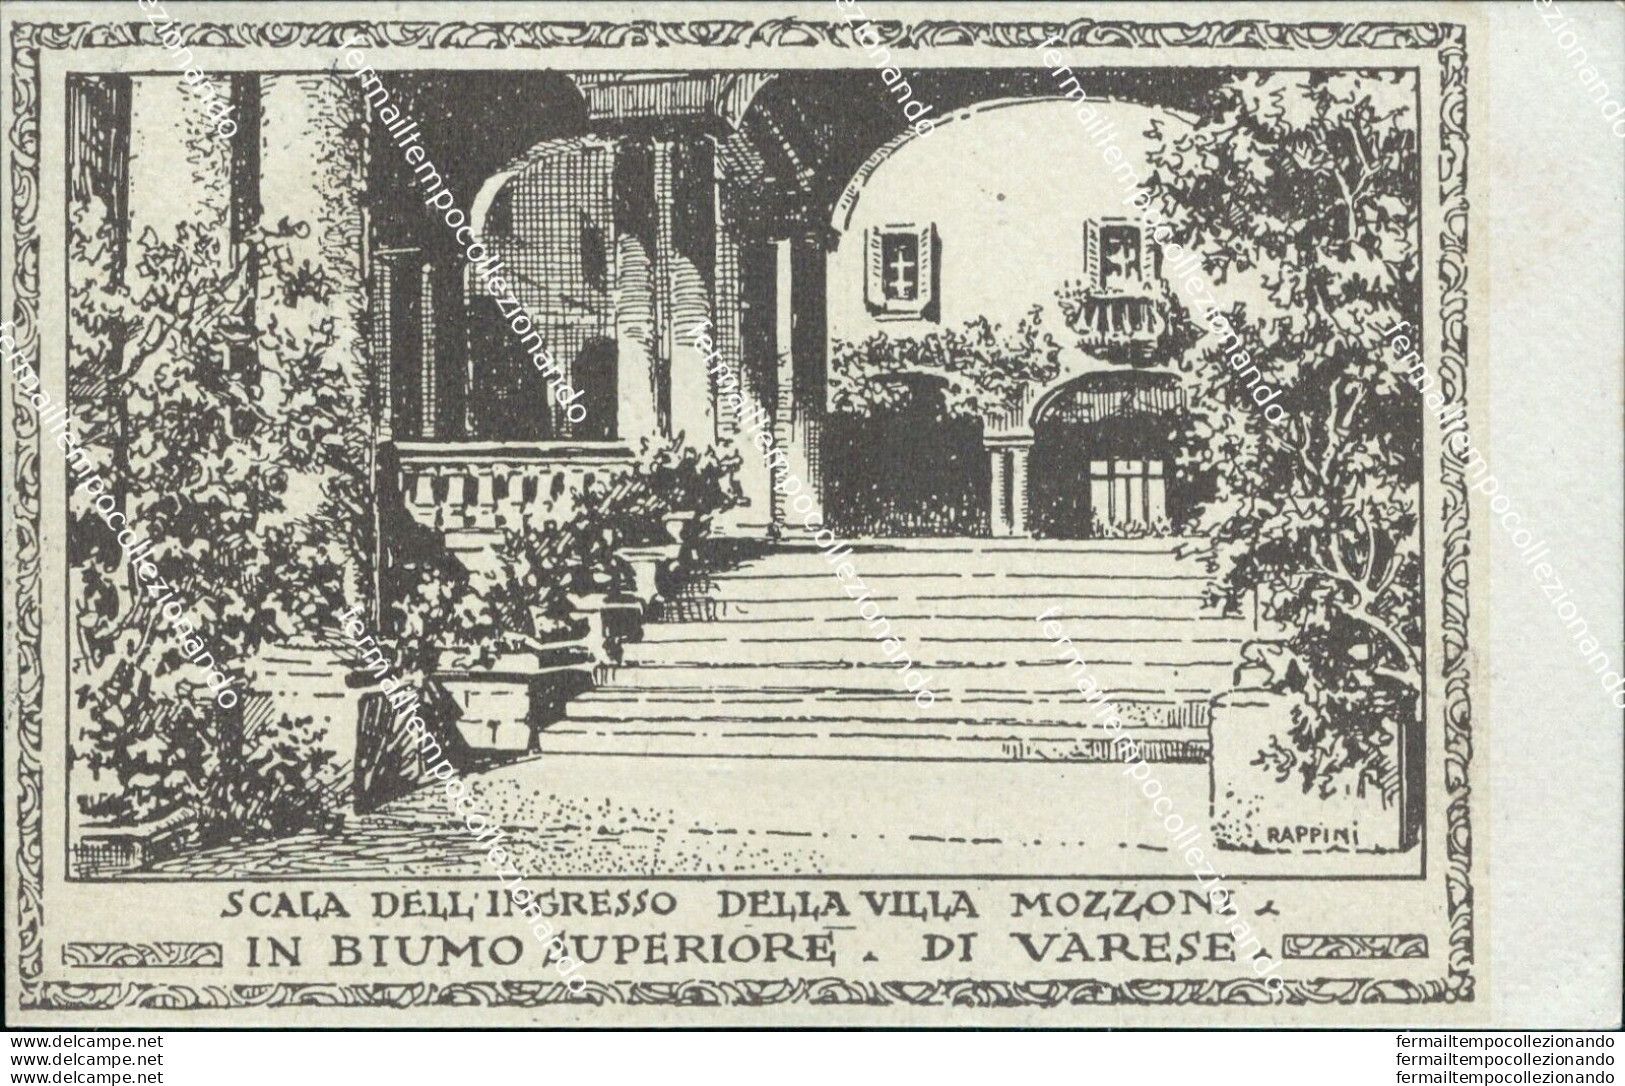 Bs193 Cartolina Biumo Superiore Varese Scala Dell'ingresso Della Villa Mozzoni - Varese